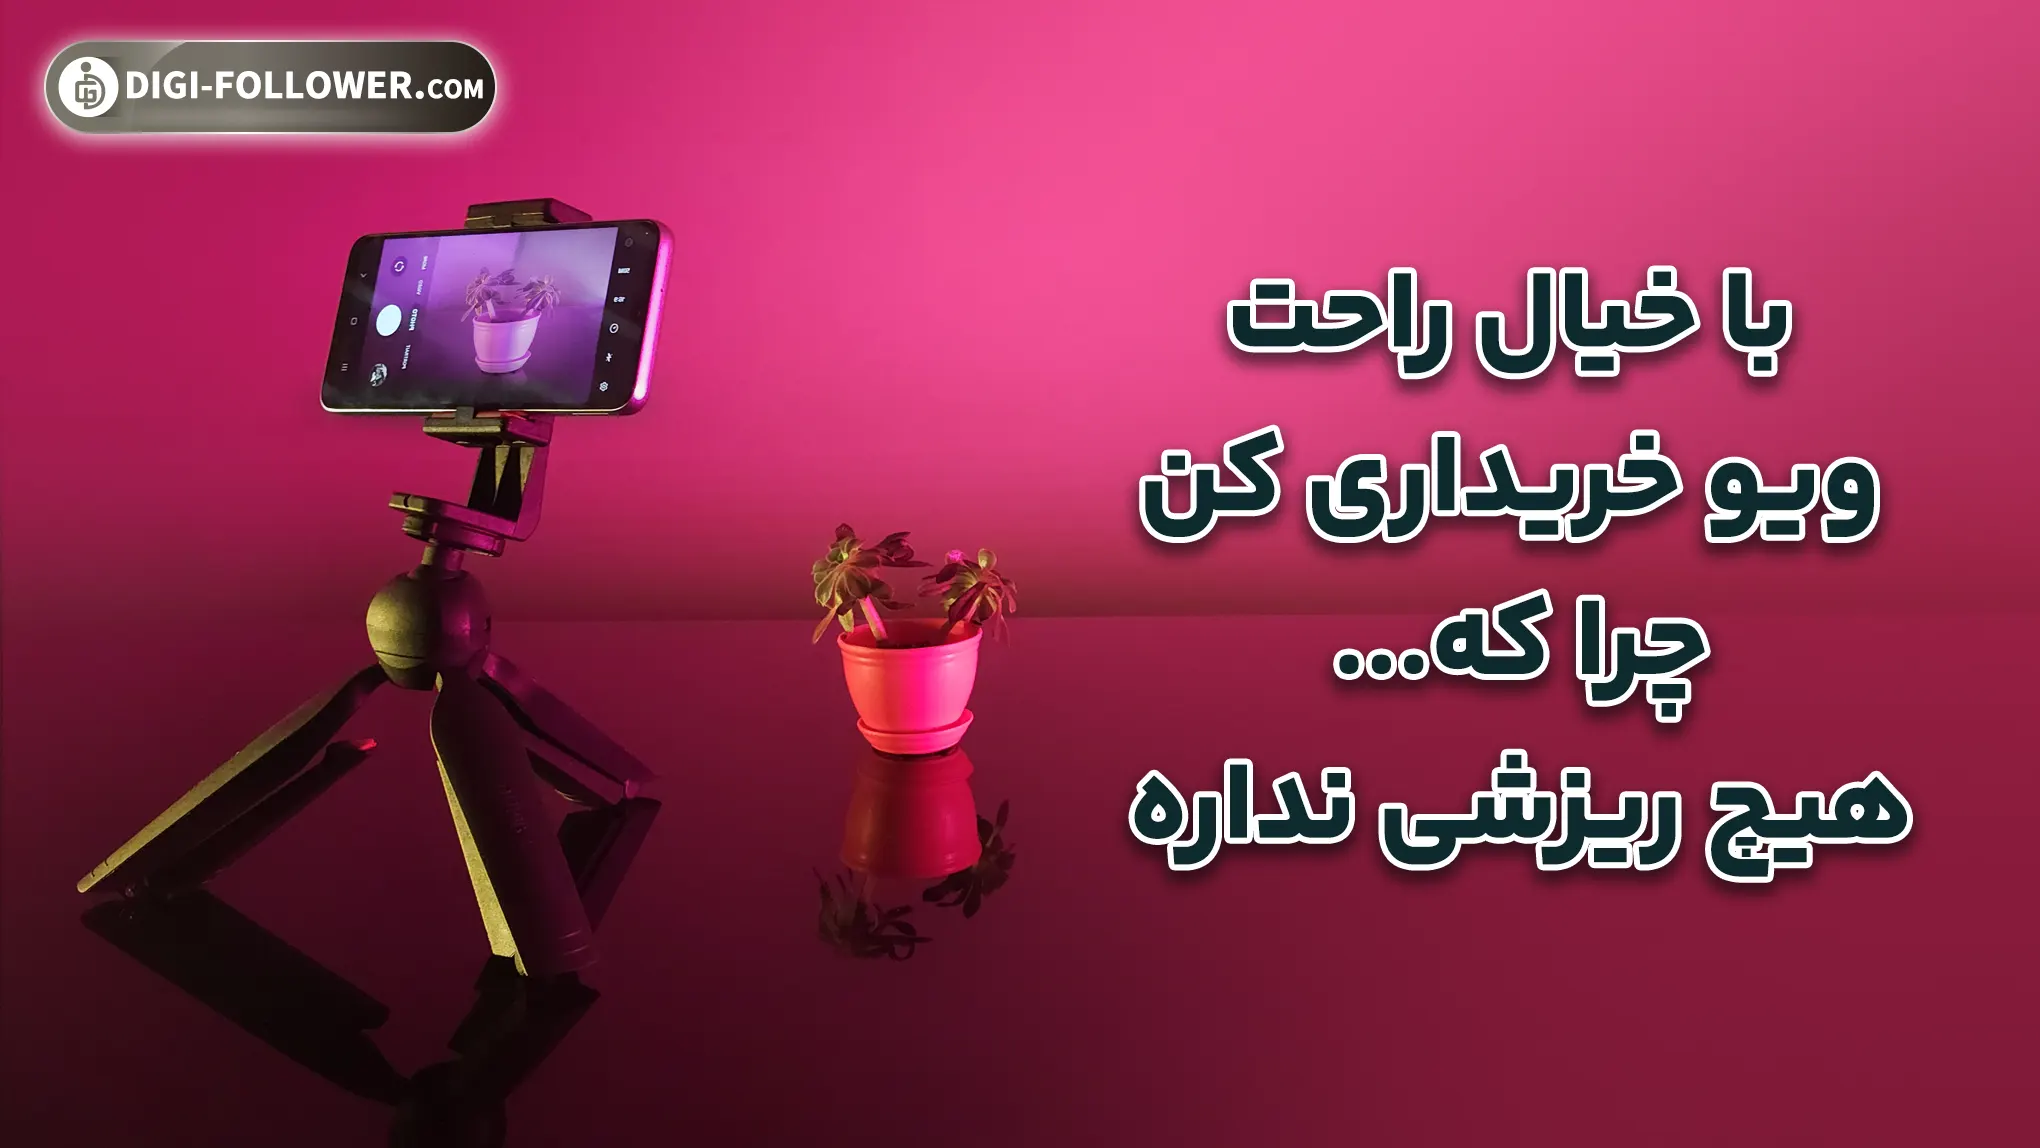 3-خرید ویو اینستاگرام واقعی و ایرانی ارزان قیمت (تحویل فوری) 